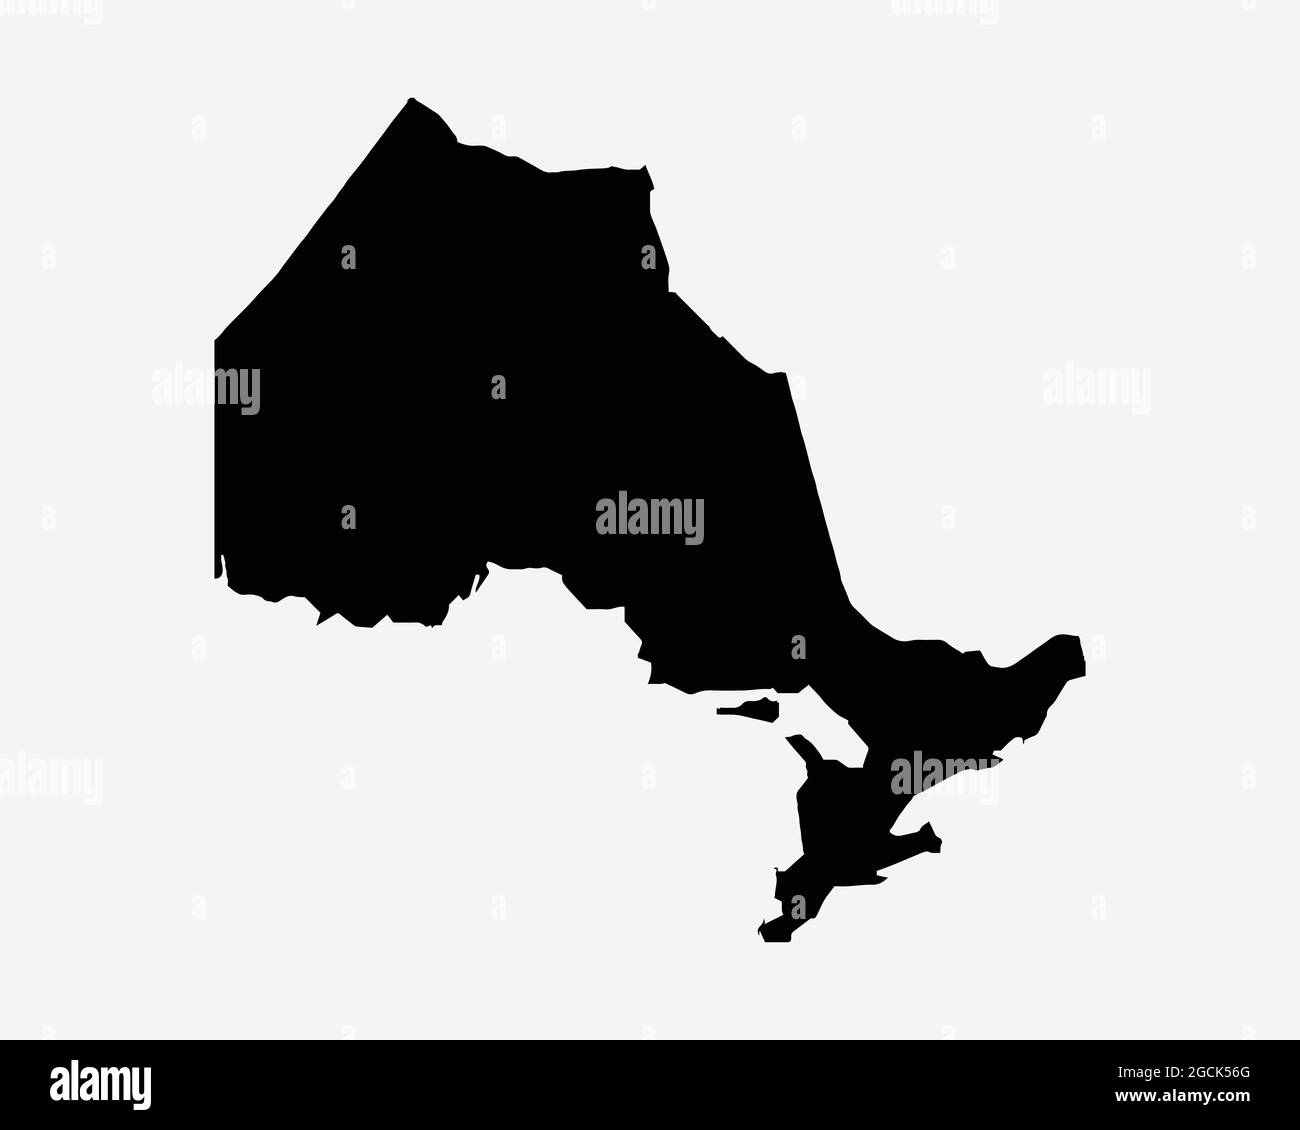 Ontario Canada carte Silhouette noire. ON, province du Canada façonner la frontière de l'Atlas de géographie. Carte noire isolée sur un arrière-plan blanc. Vecteur EPS Illustration de Vecteur